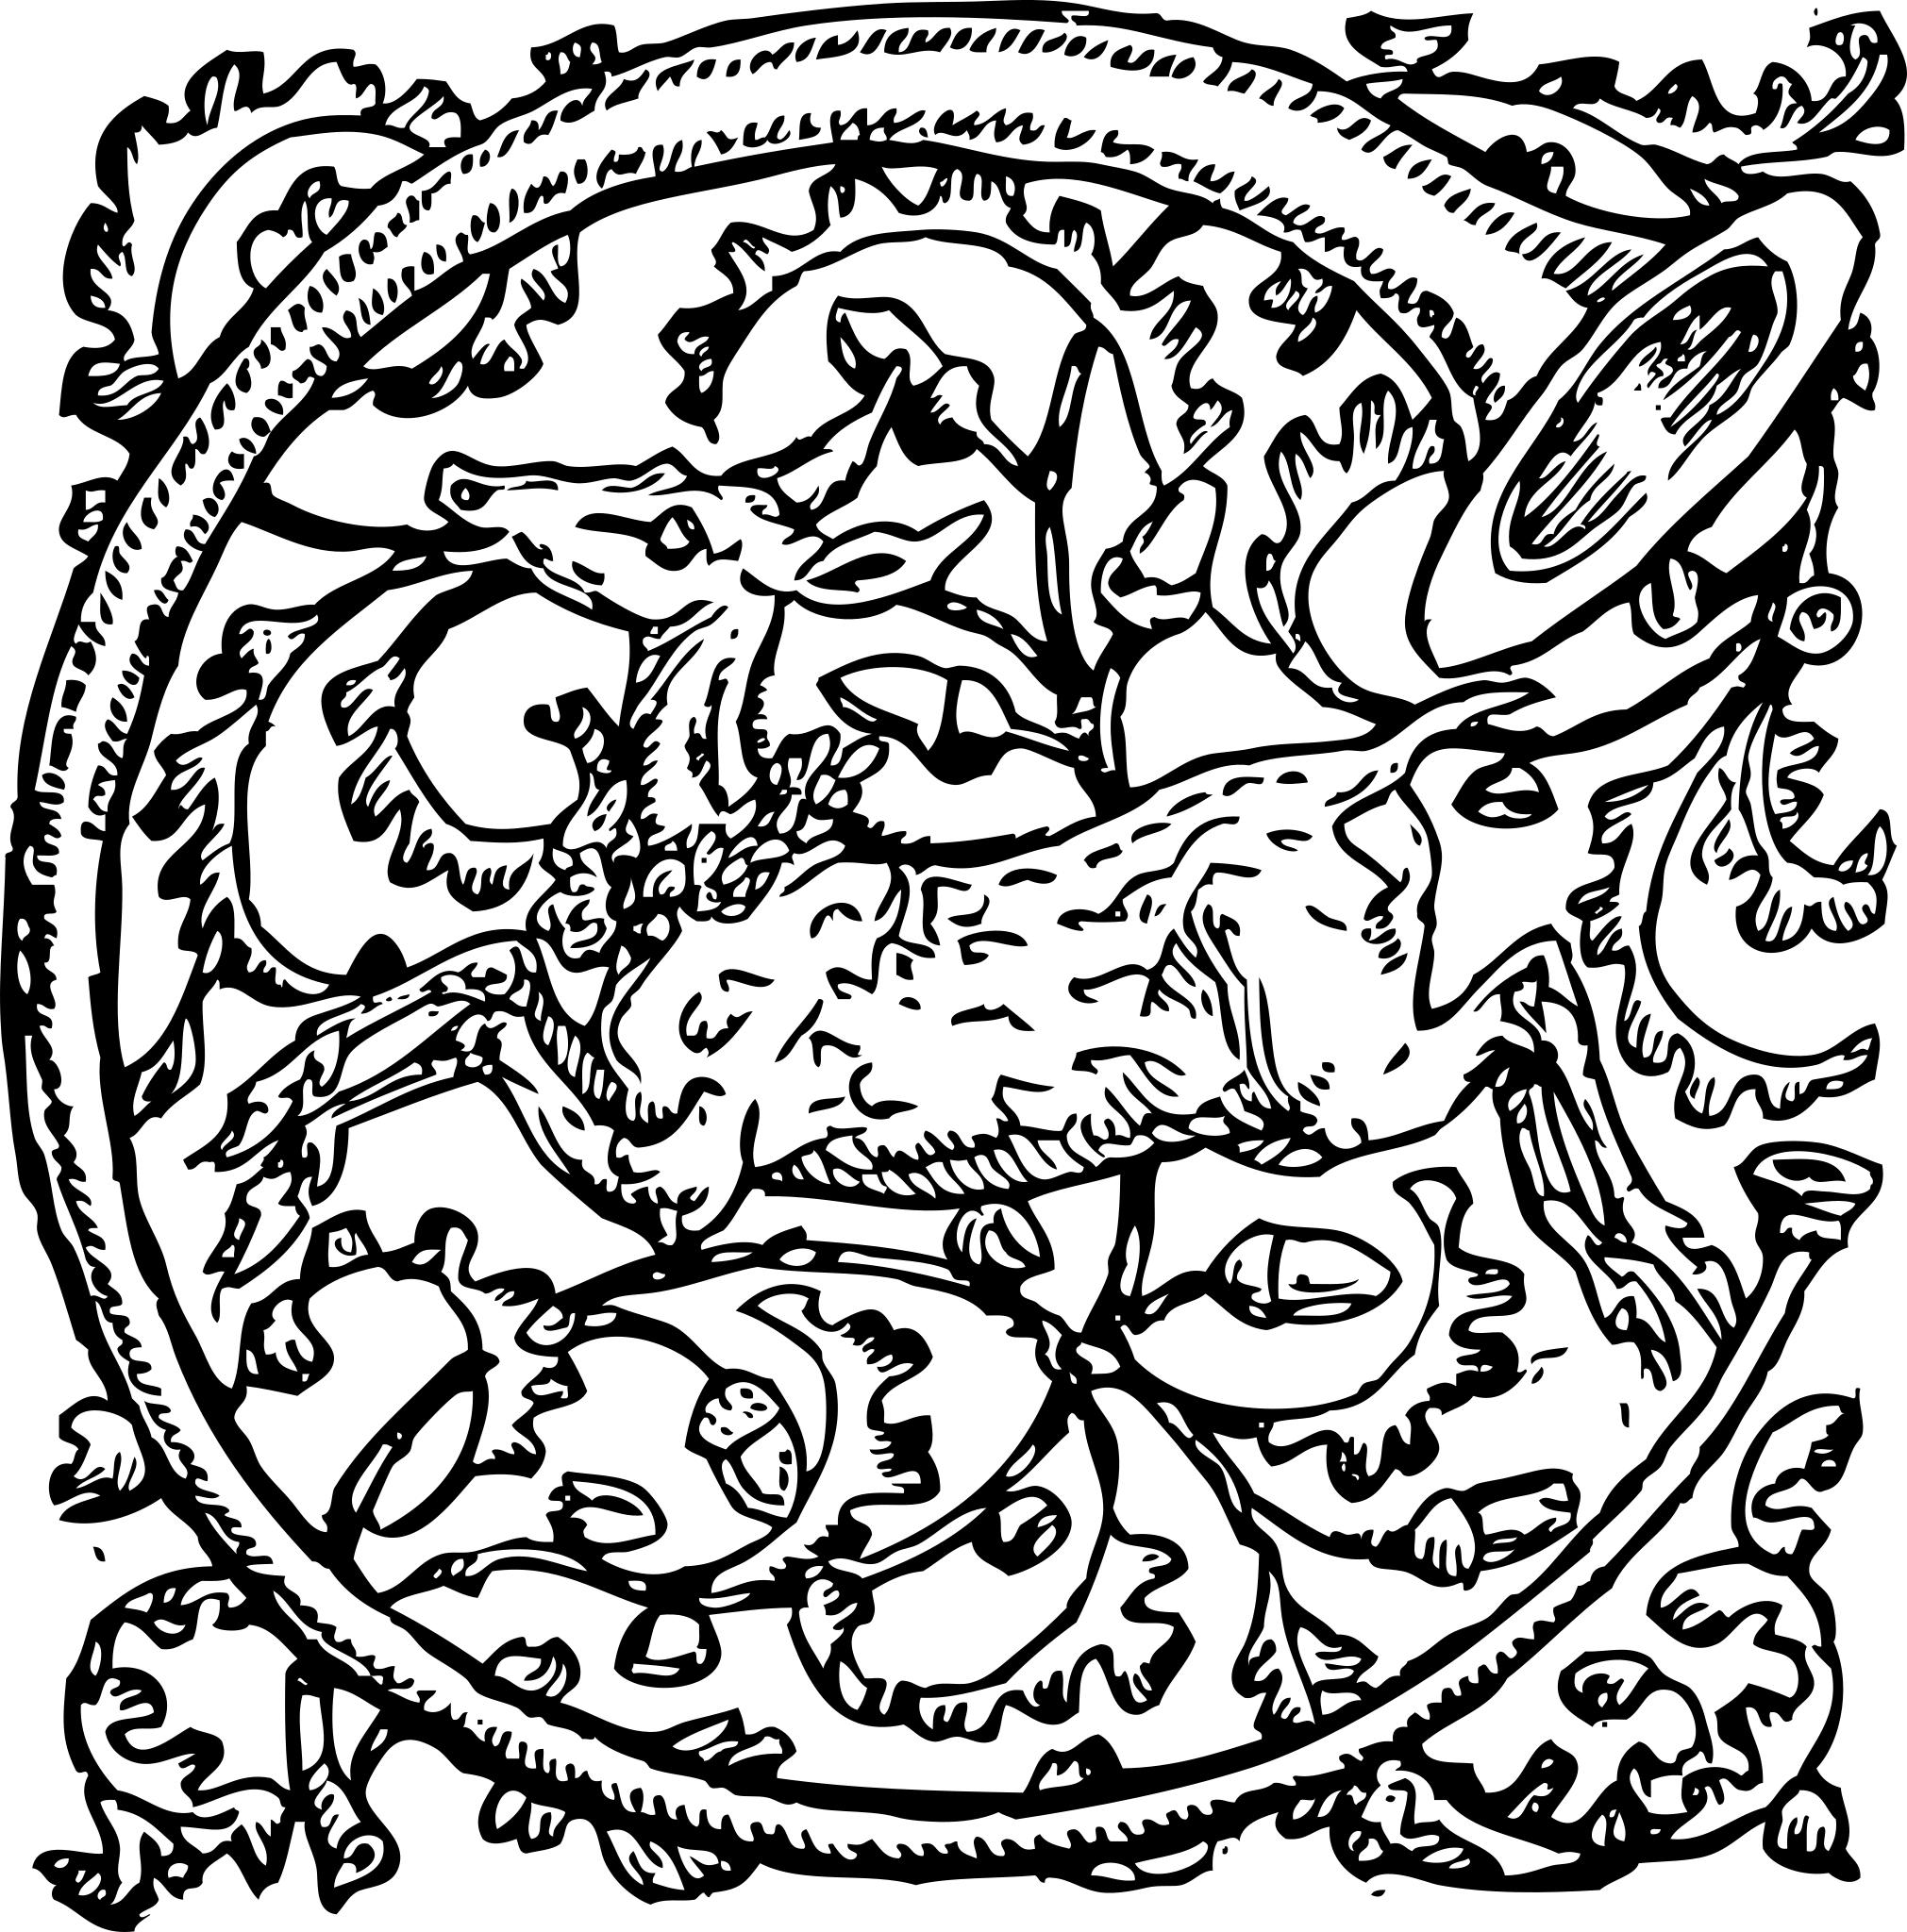 Орнамент из людей и зверей. Средневековые узоры. Звериный орнамент. Средневековый орнамент с животными. Охотничий орнамент.